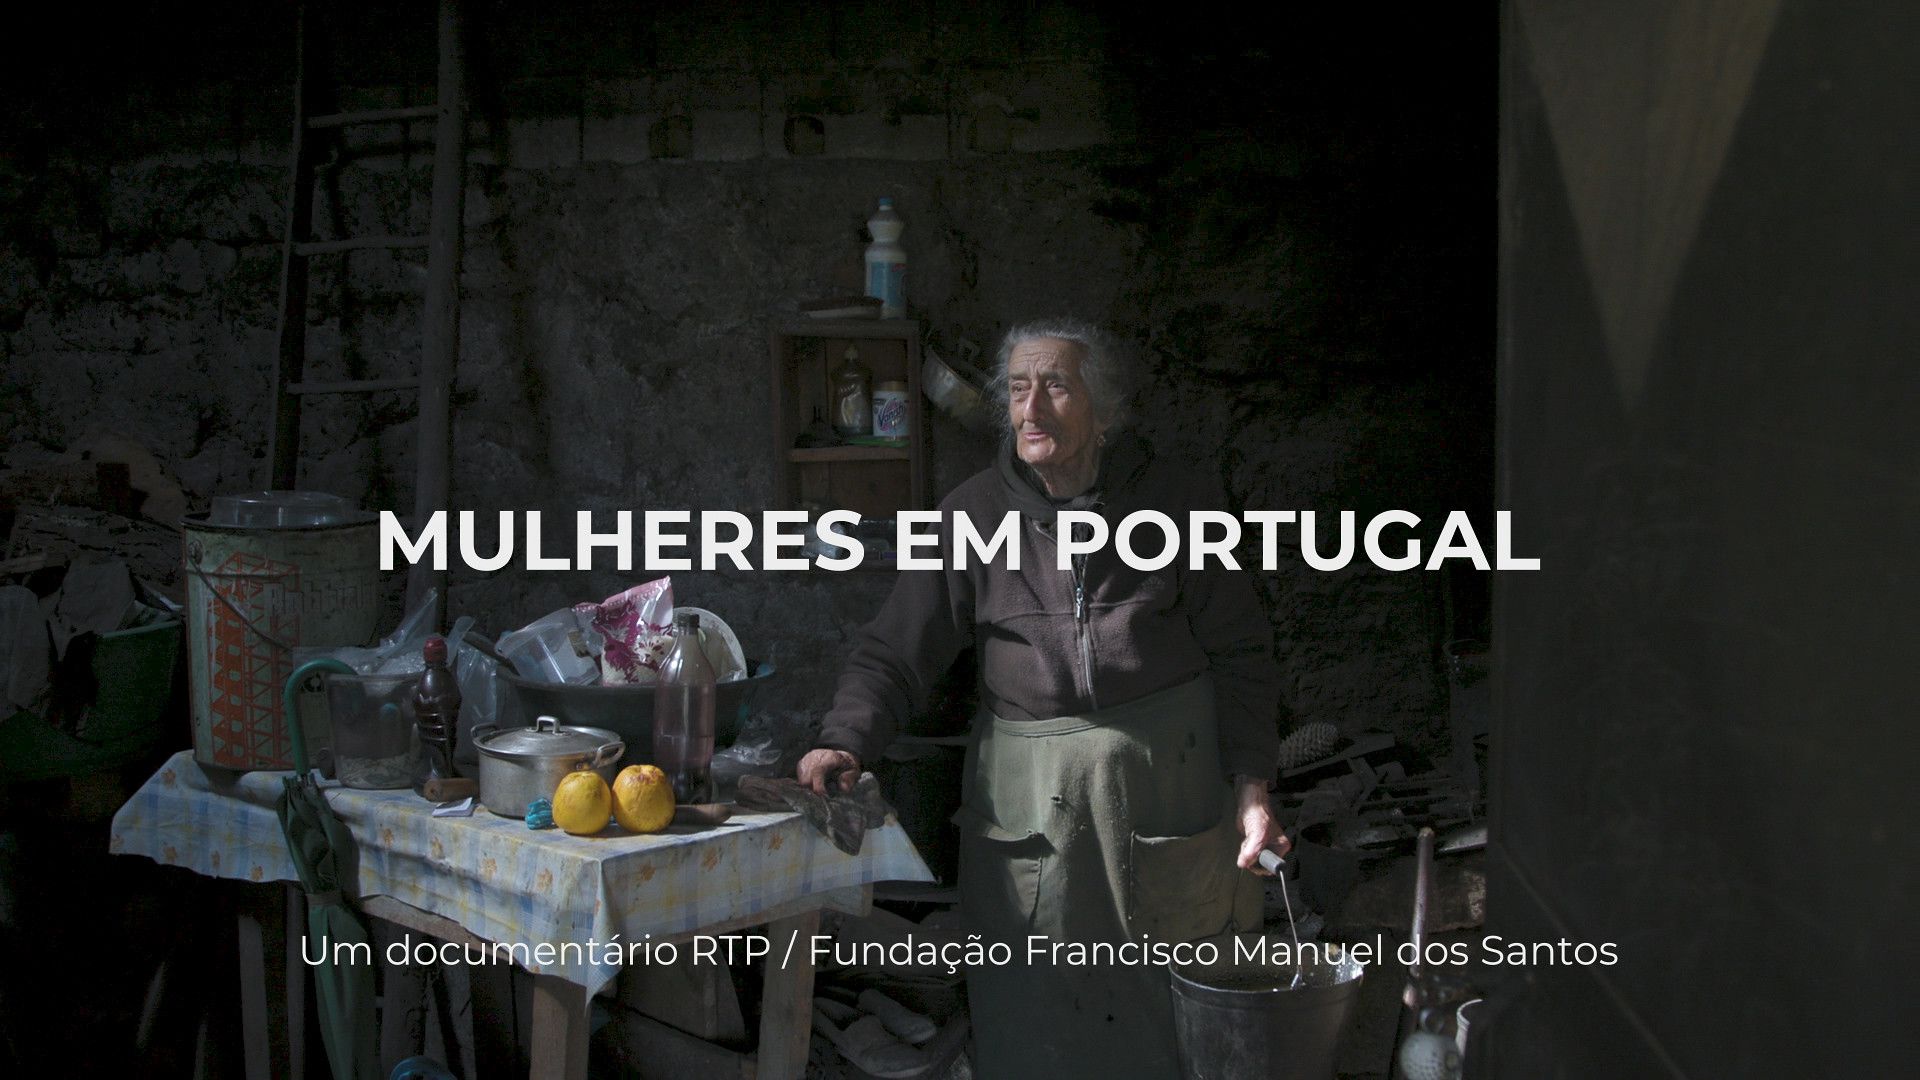 “Mulheres em Portugal”. RTP estreia série documental sobre como é ser-se mulher em Portugal nos últimos 40 anos